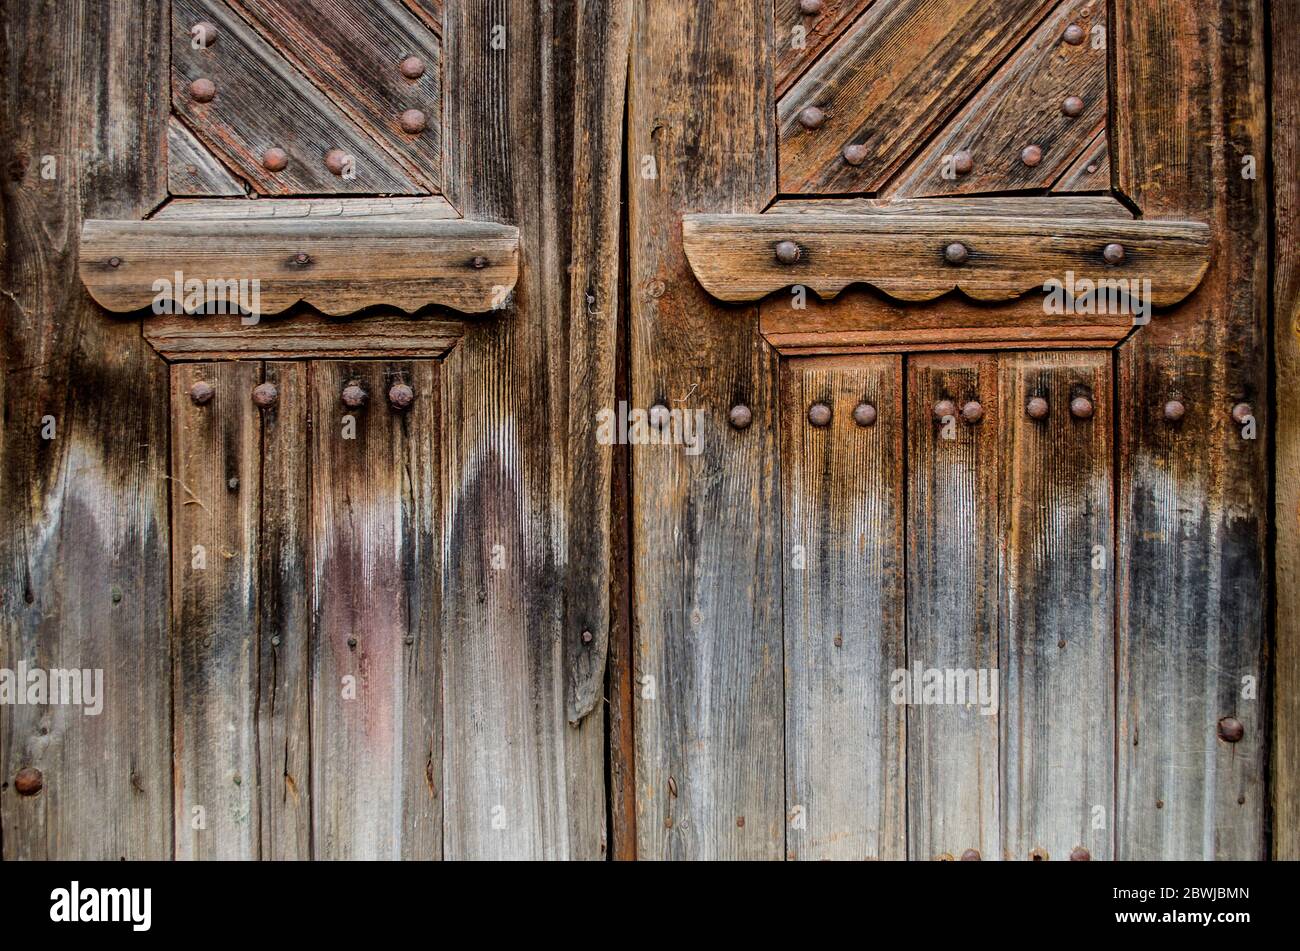 Ancienne porte en bois dans la maison ukrainienne. Photo de style rustique. Banque D'Images